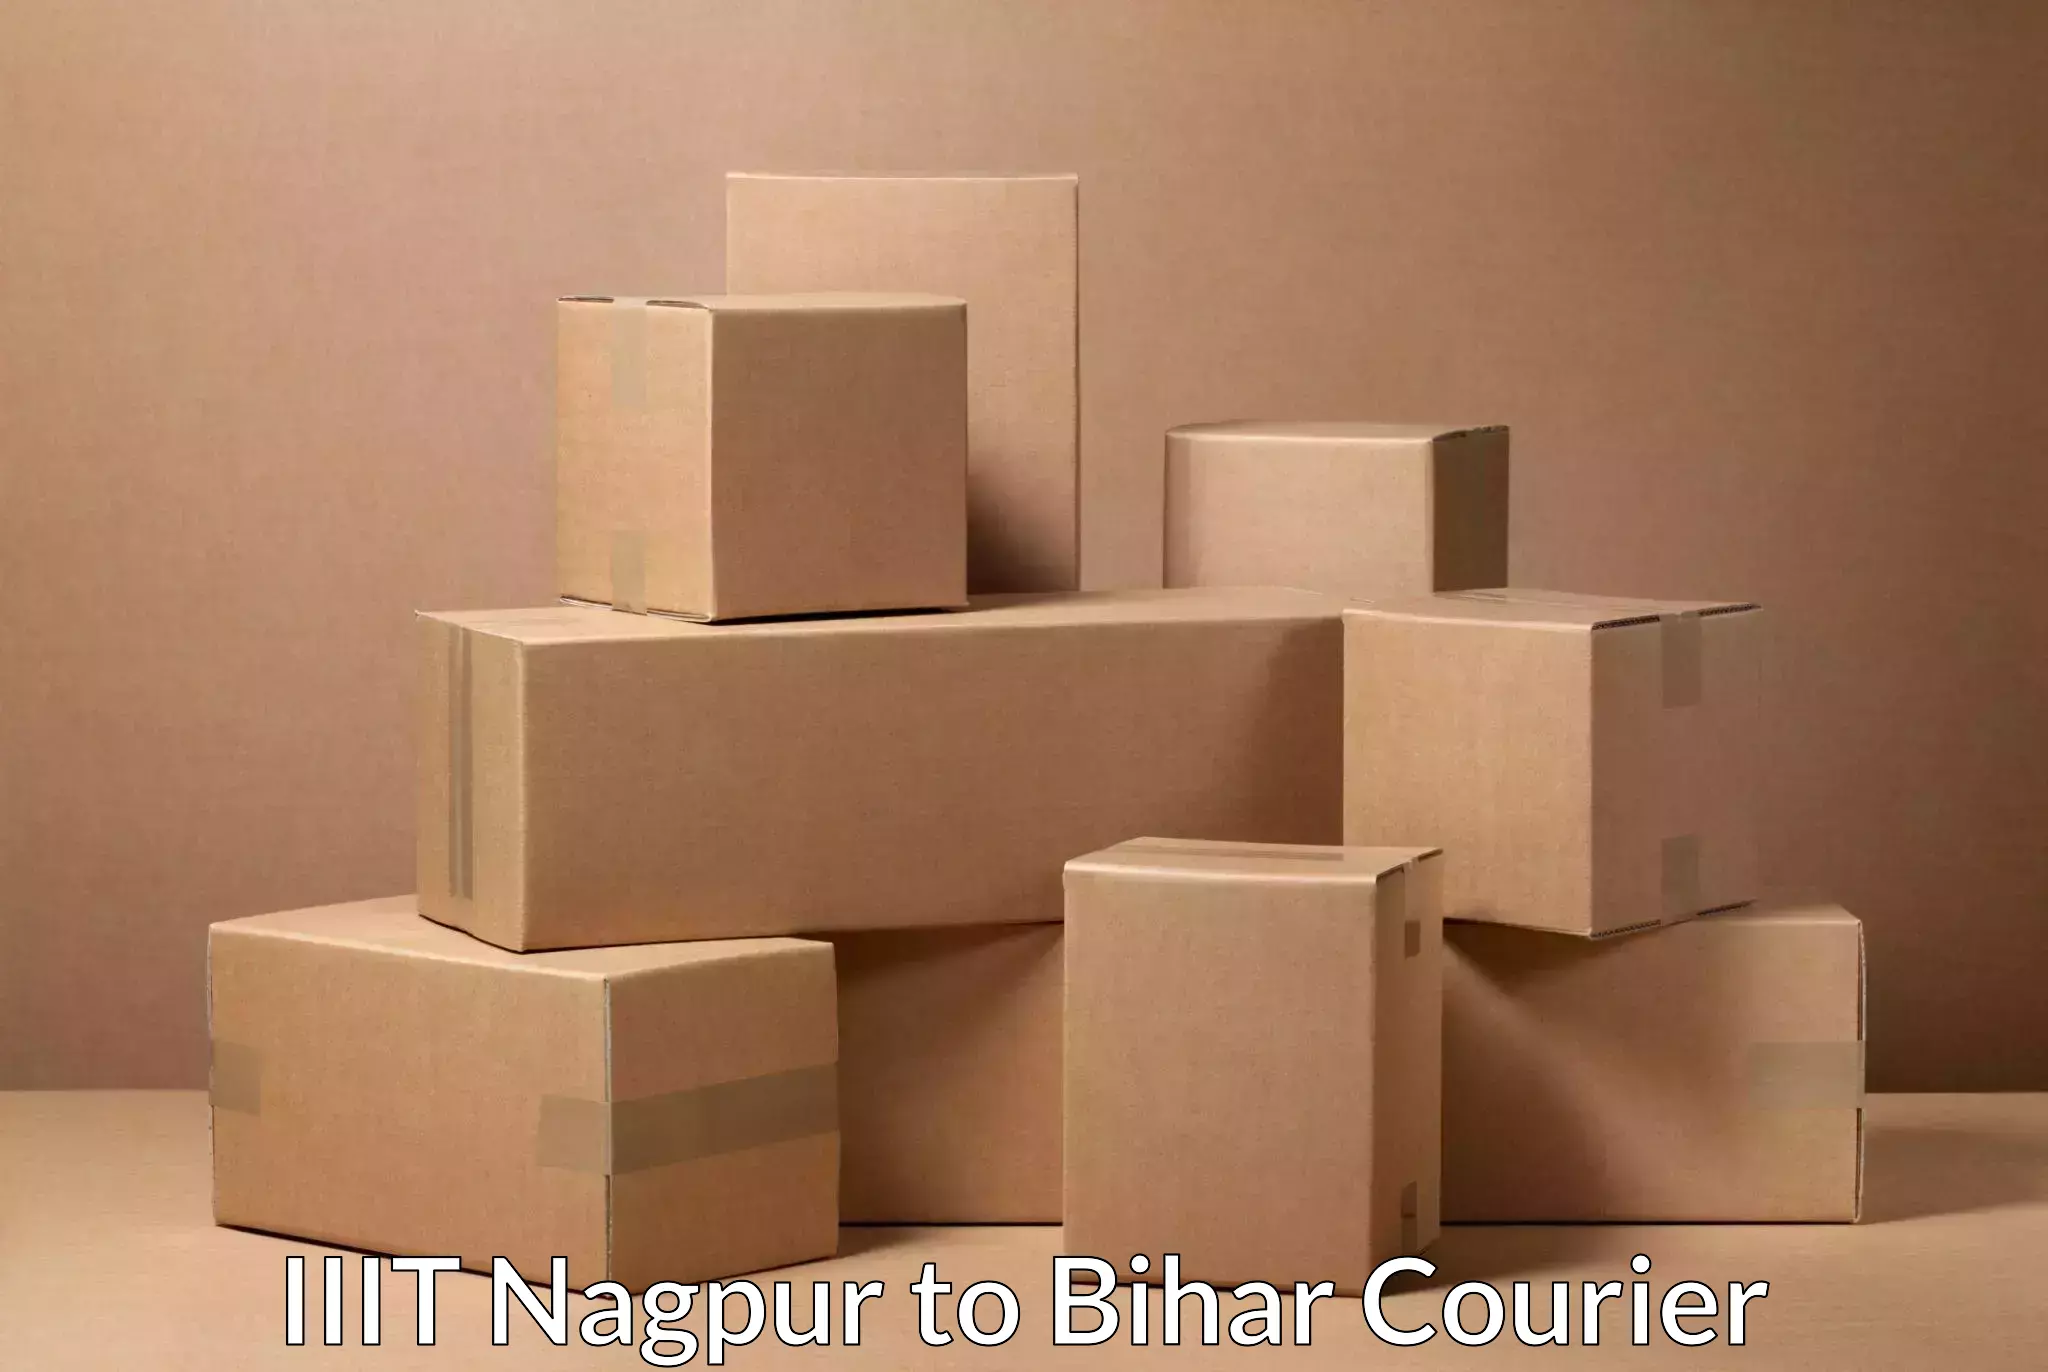 Efficient order fulfillment IIIT Nagpur to Sugauna